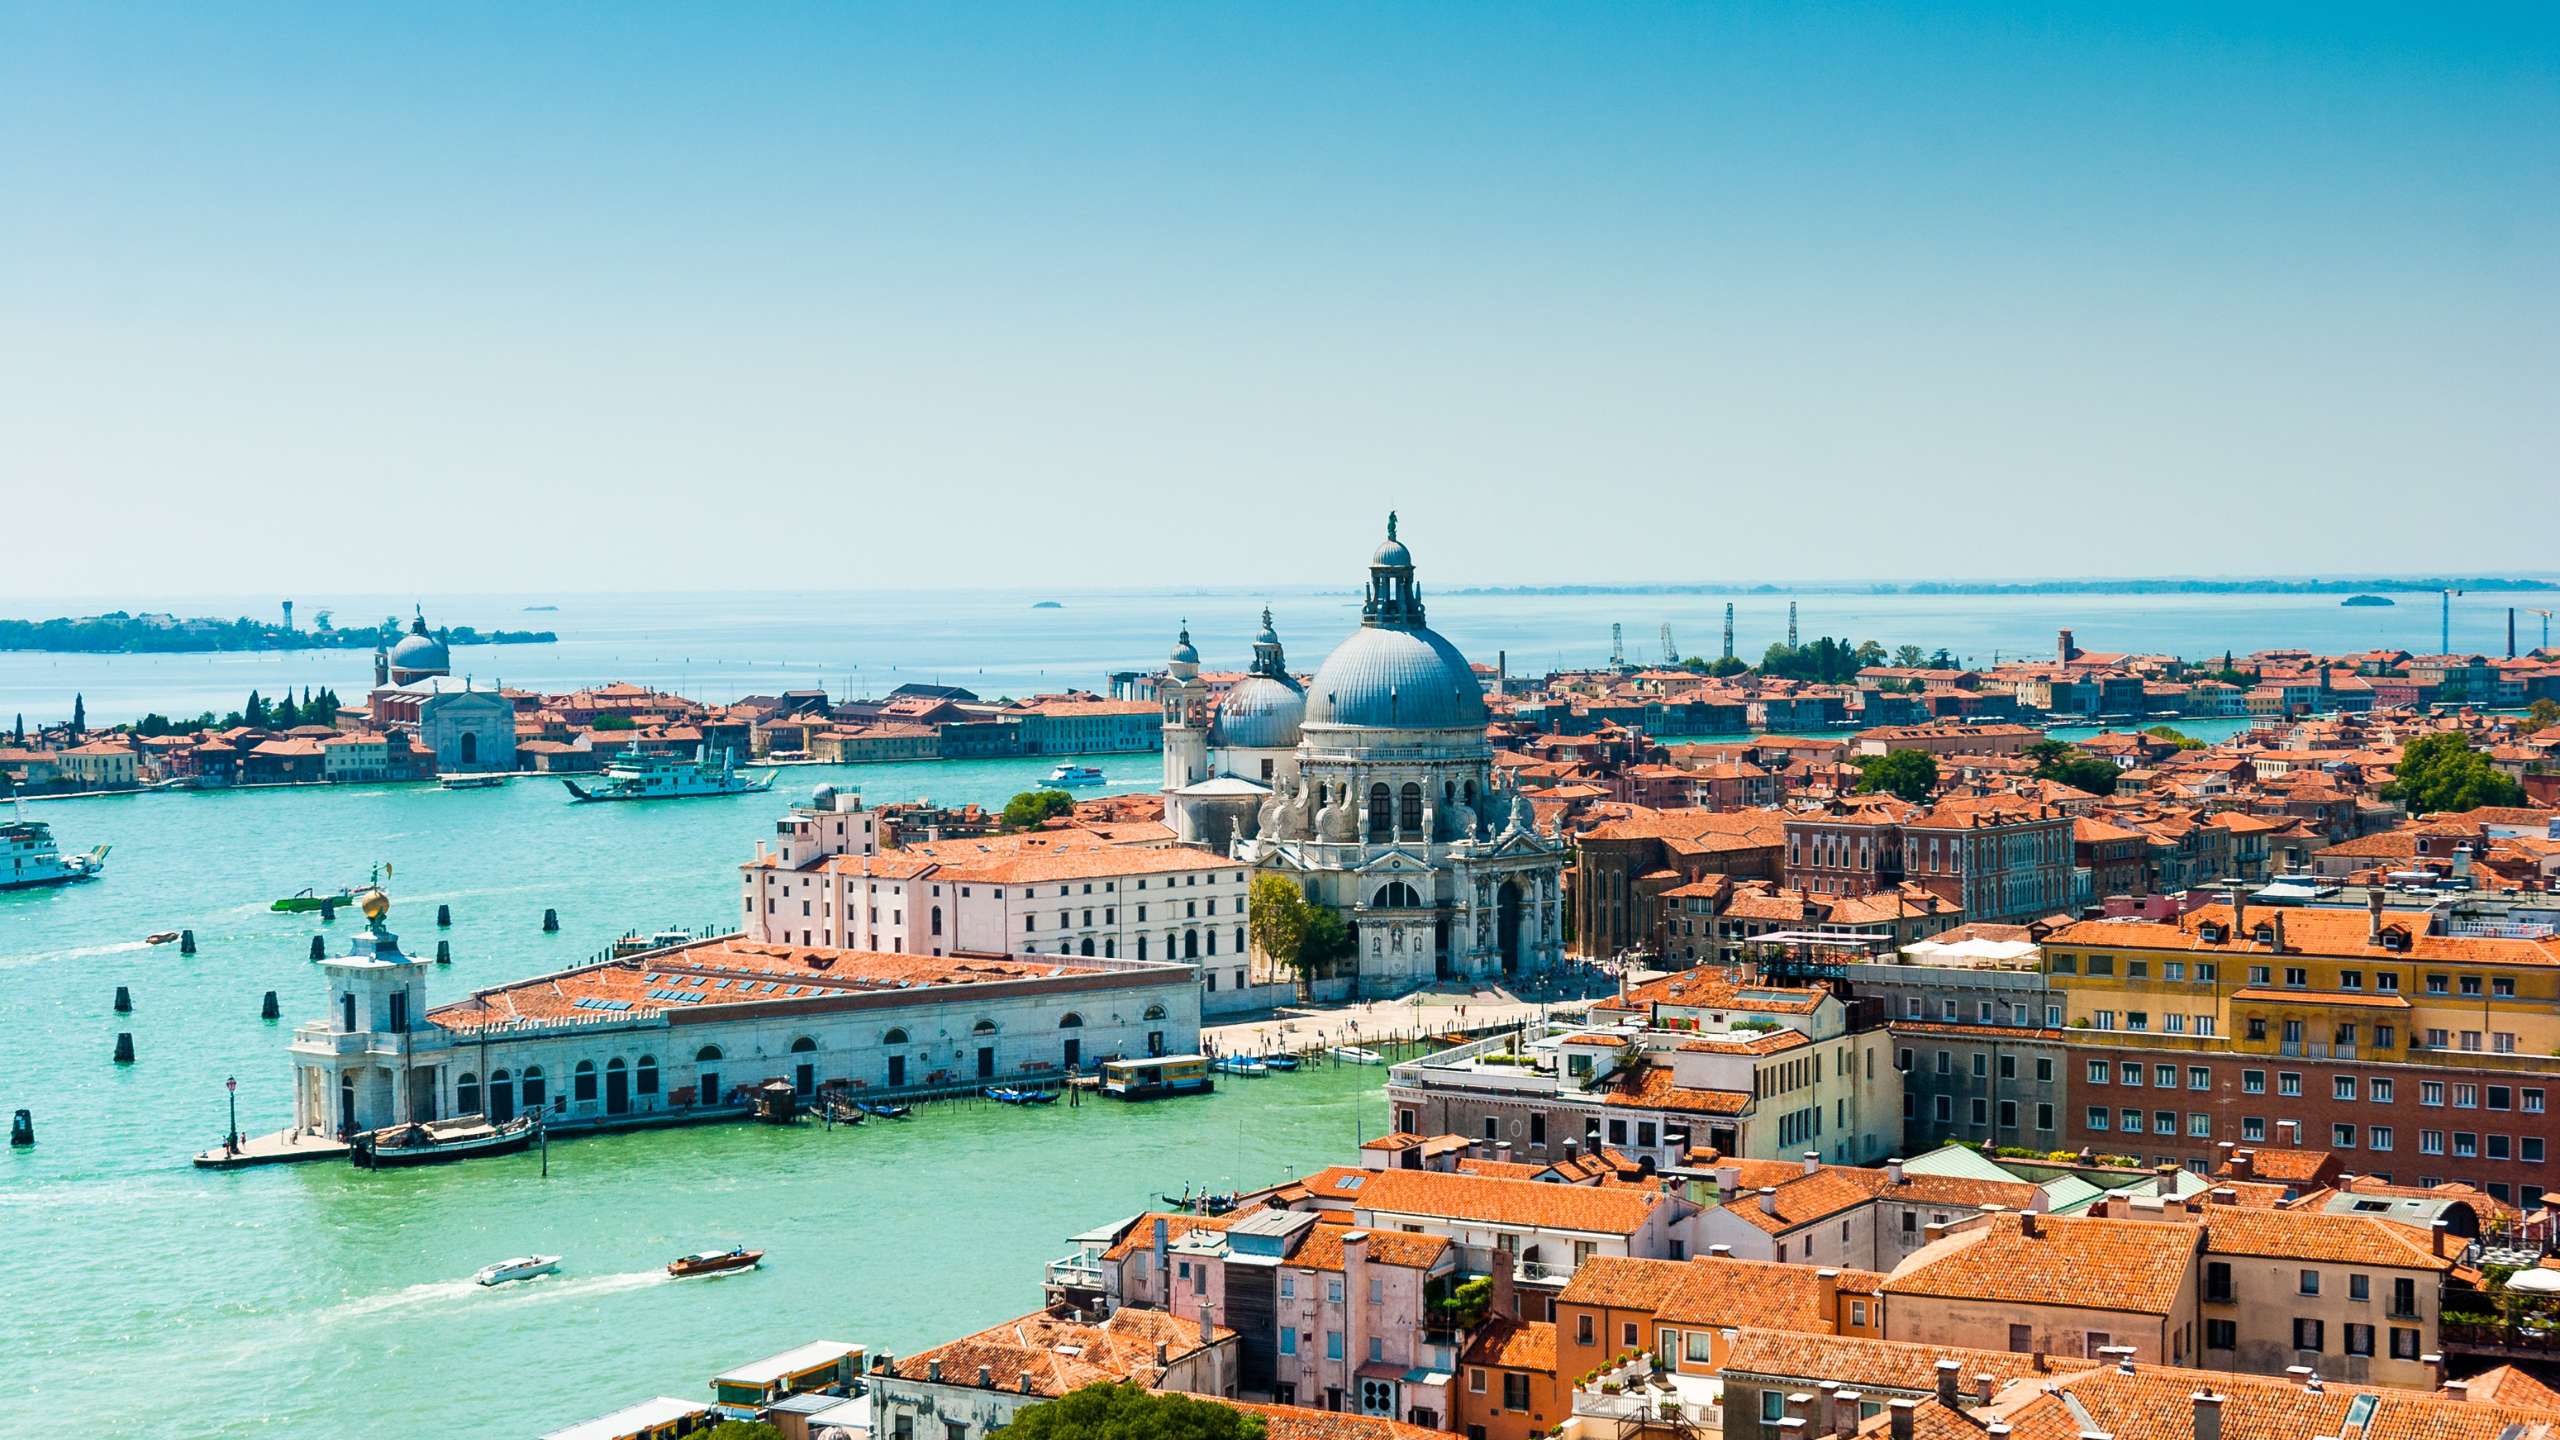 Venice and Chioggia